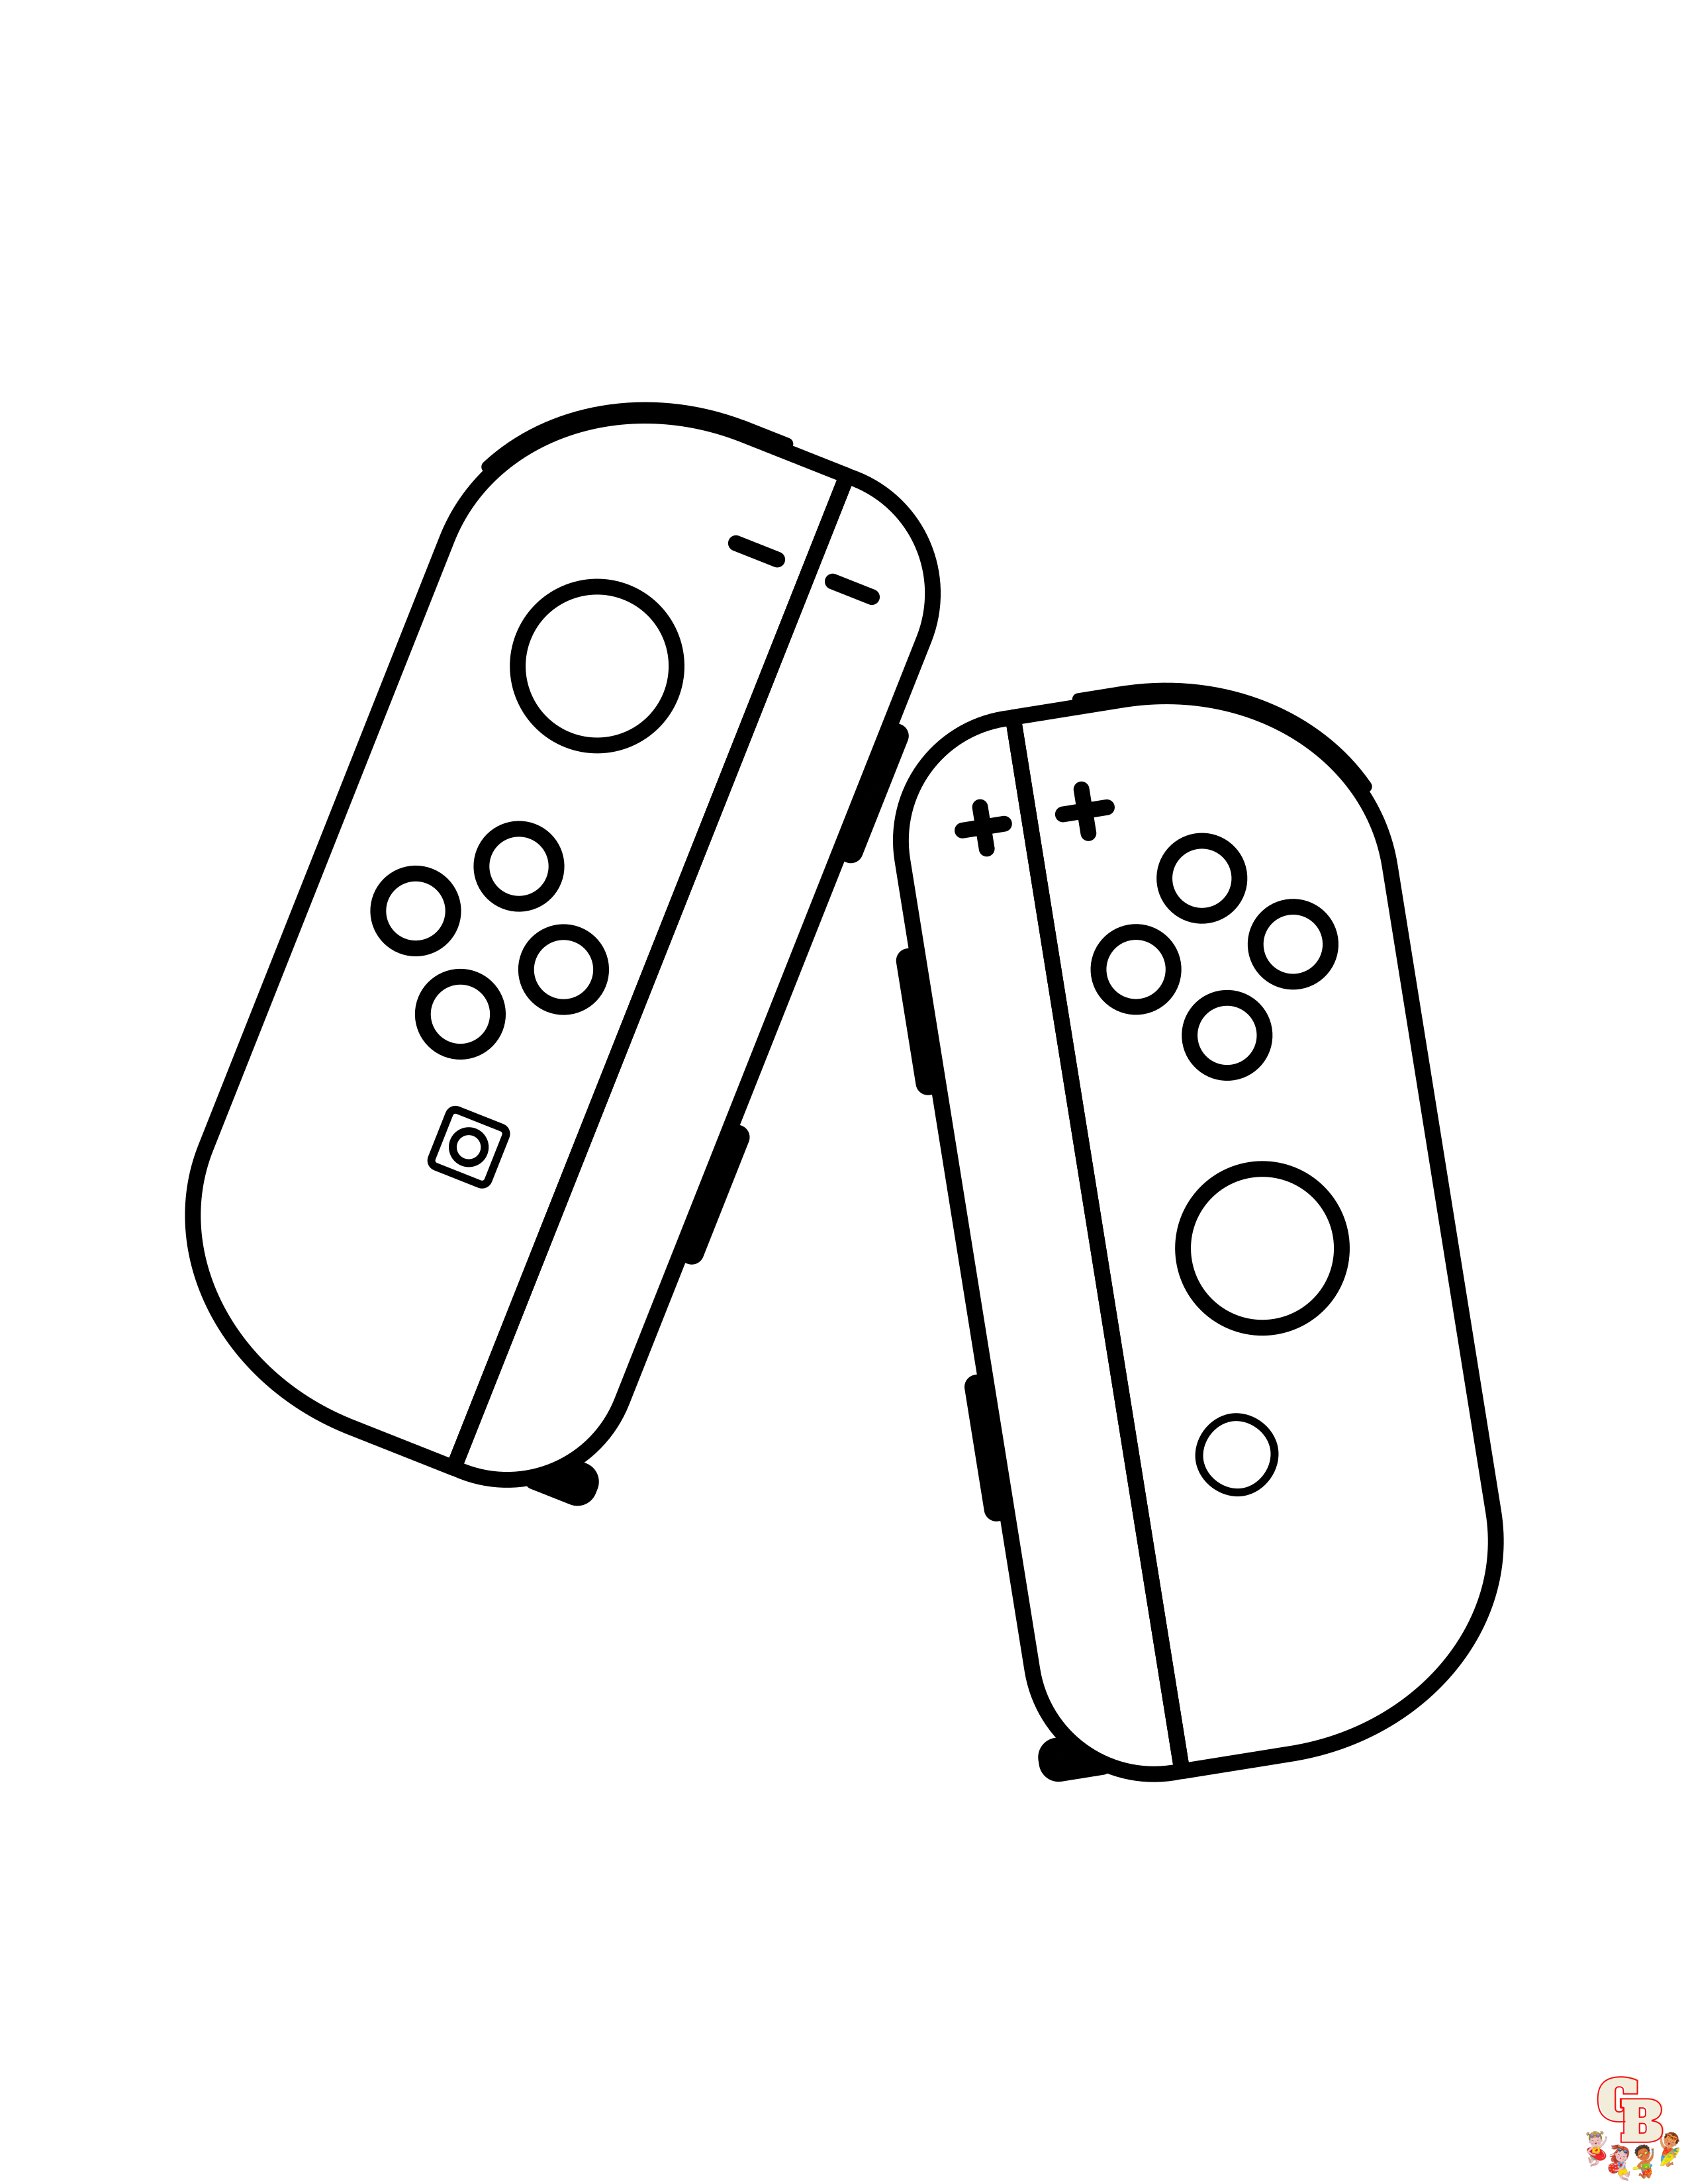 Nintendo Switch Σελίδες χρωματισμού 1